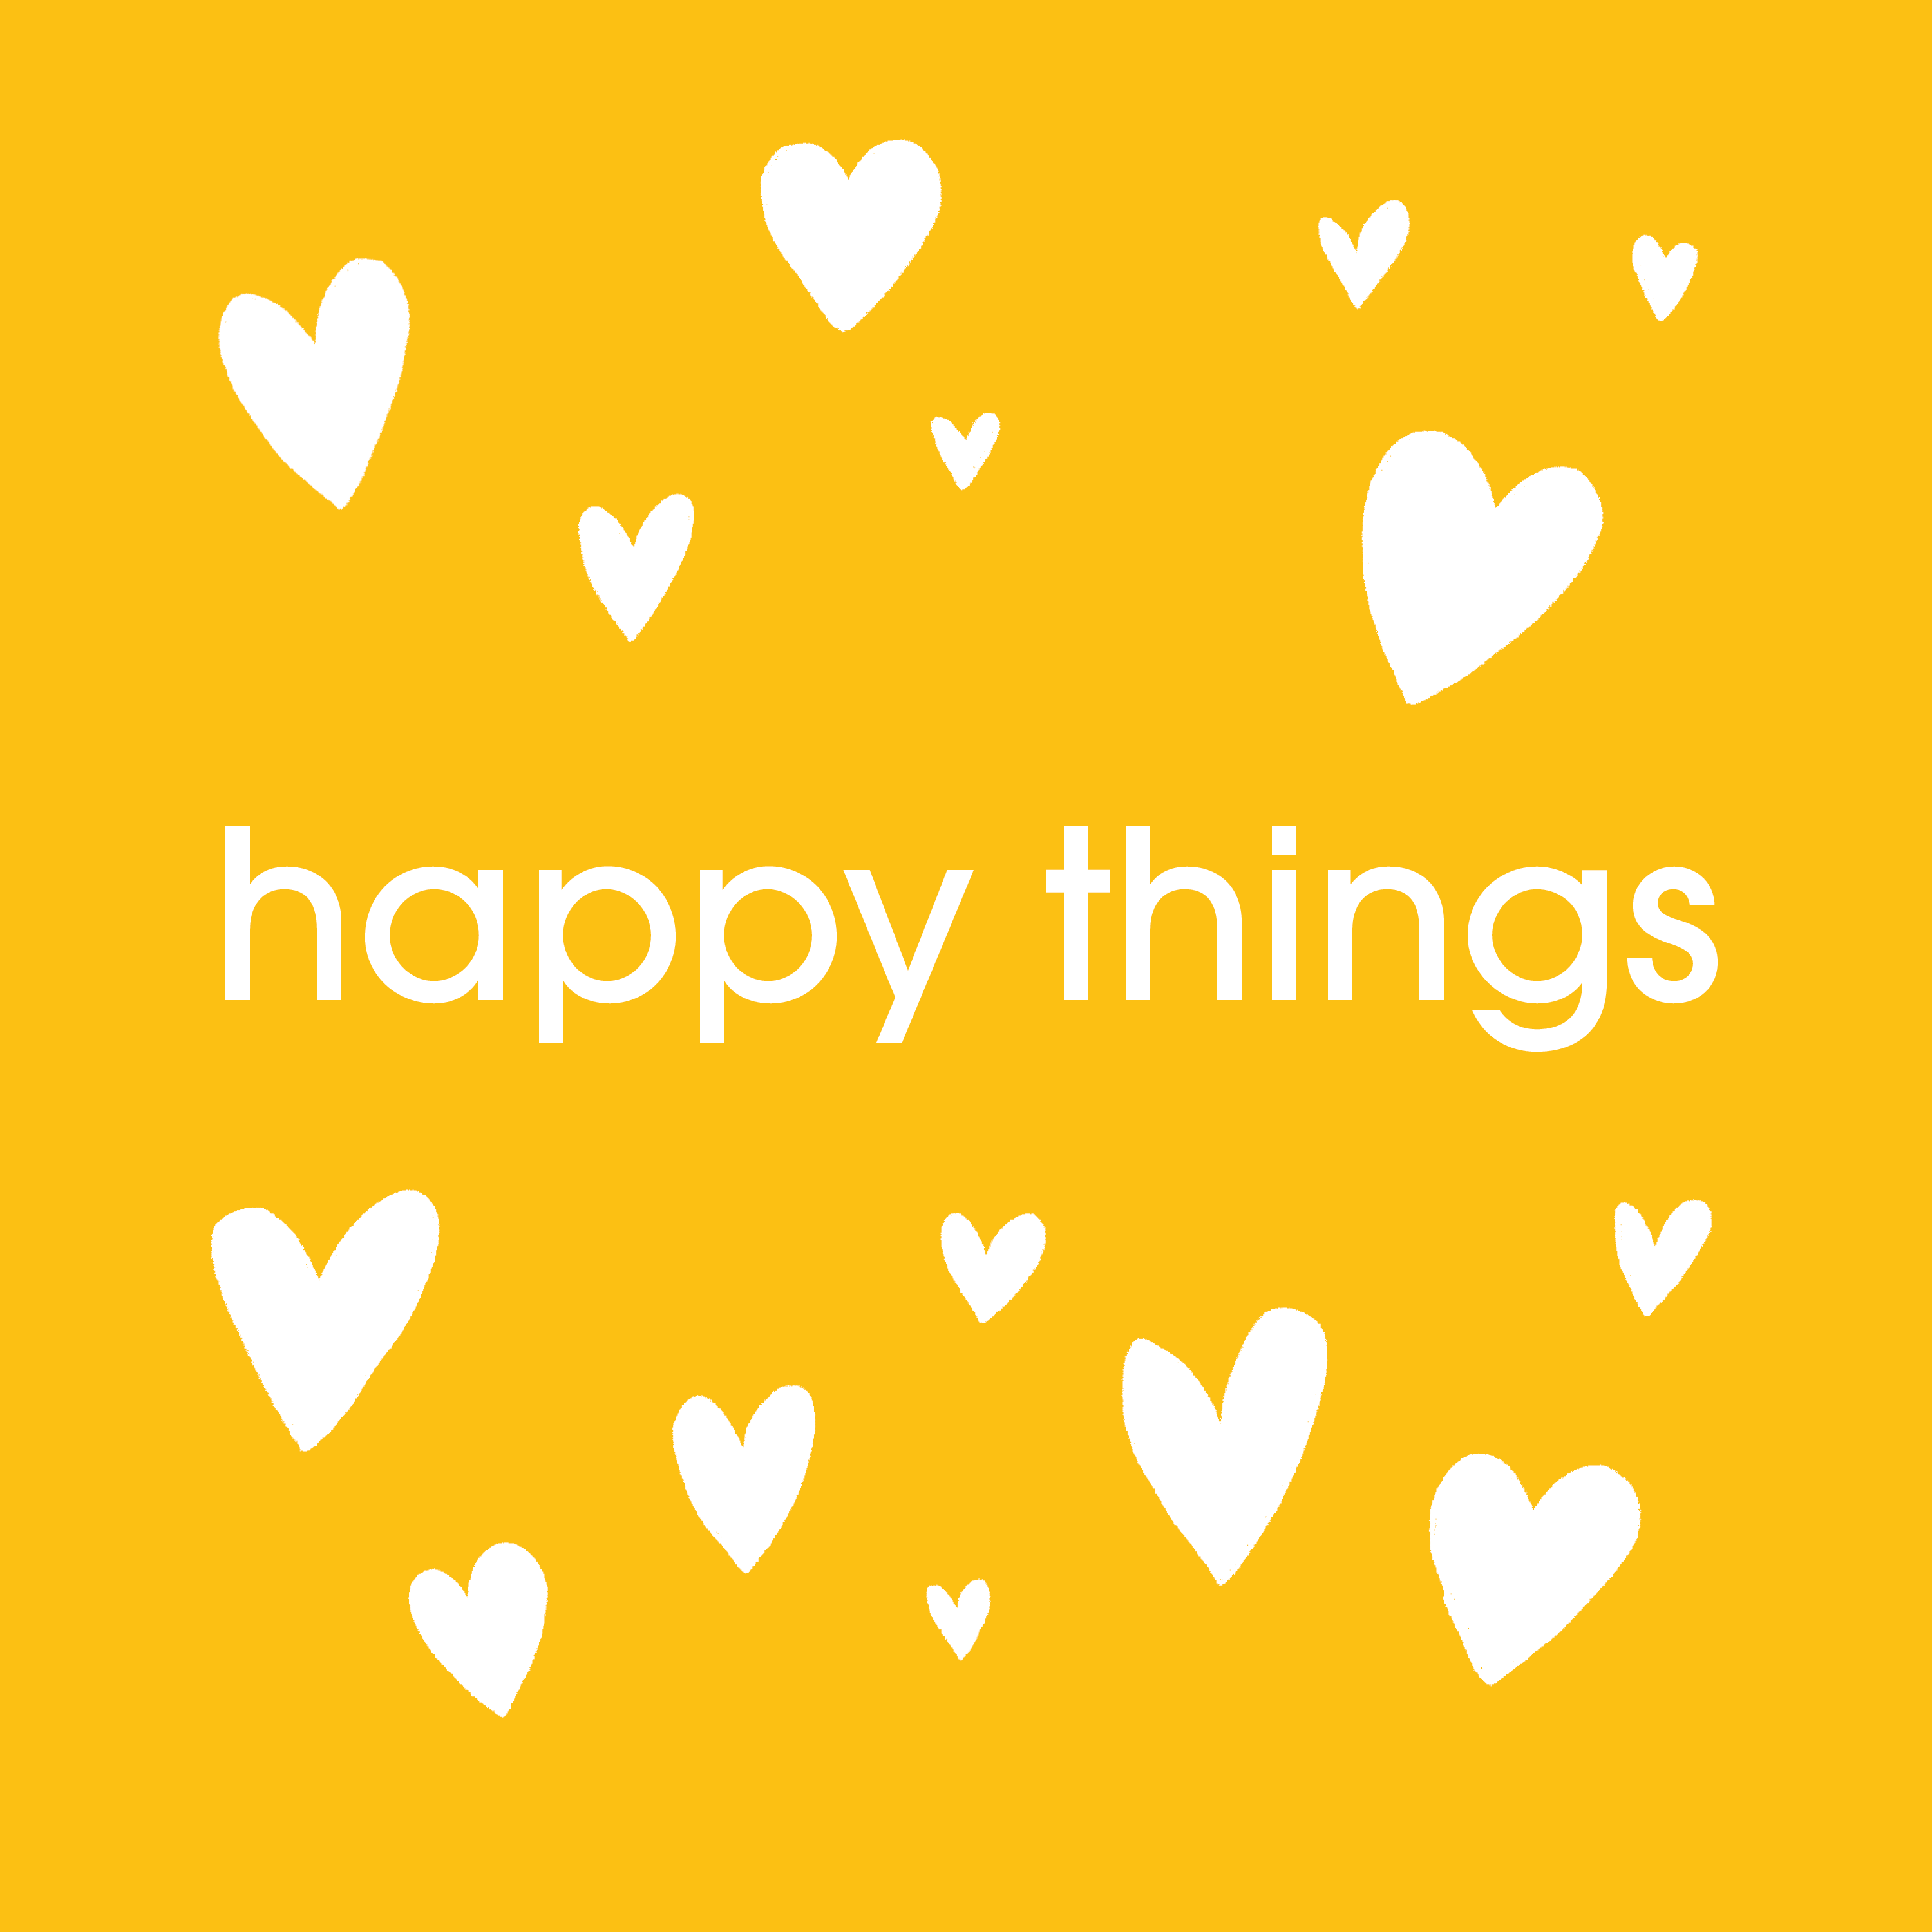 happy things // may